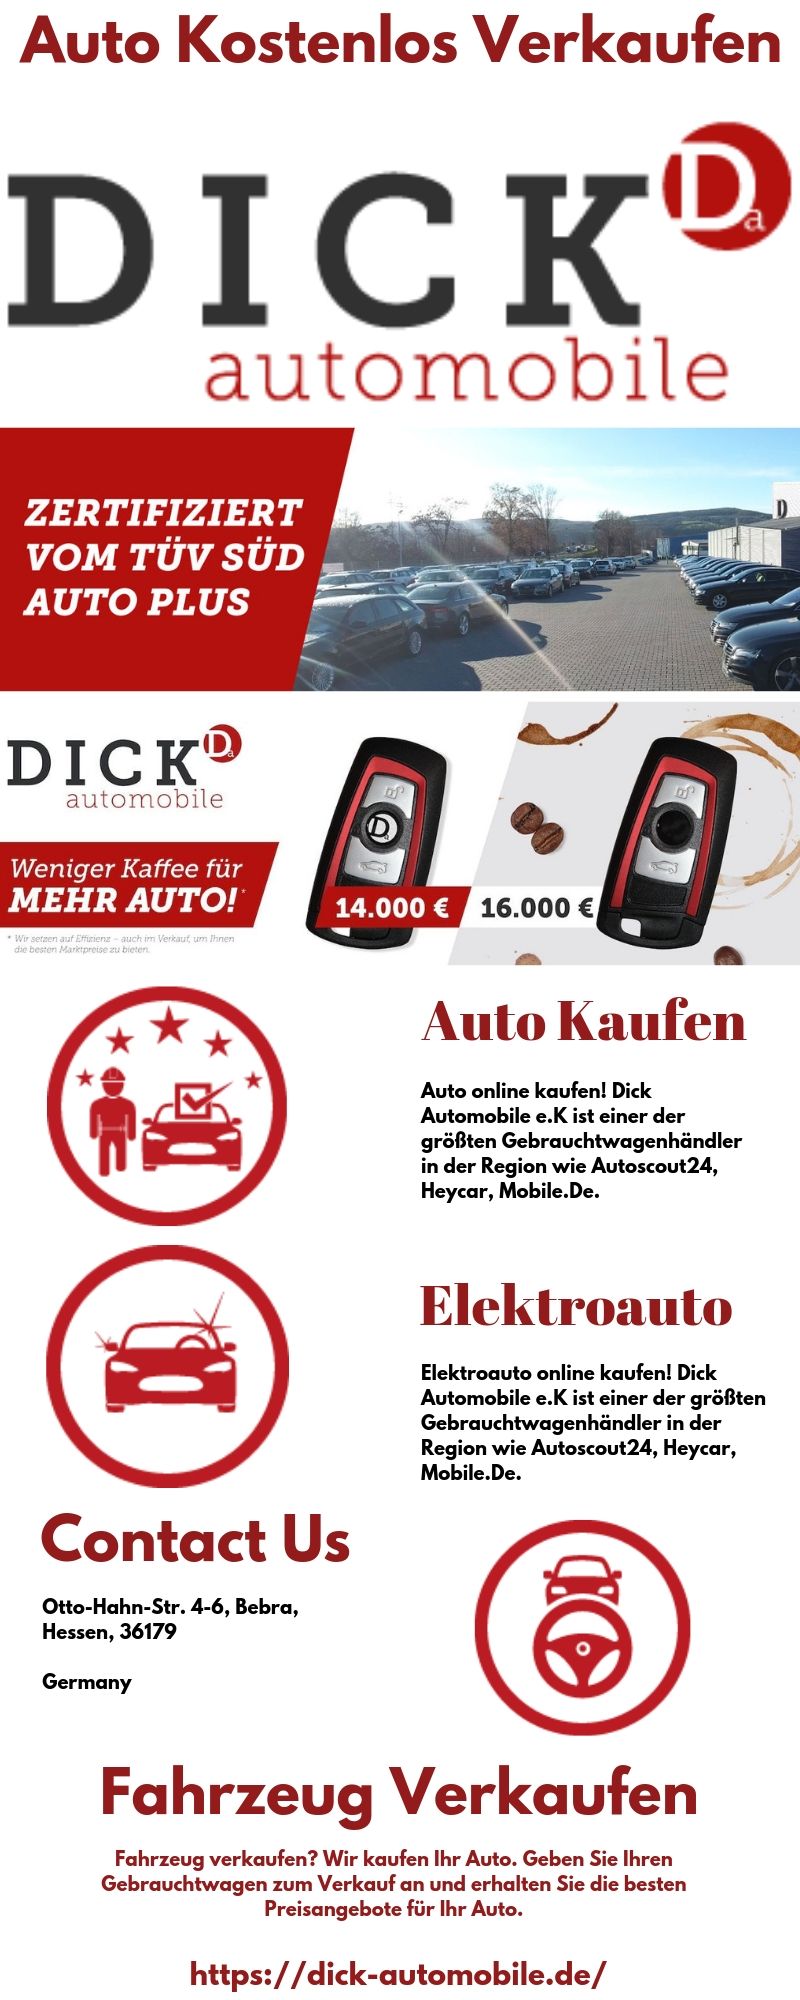 Auto_Kostenlos_Verkaufen.jpg  by Dickautomobile